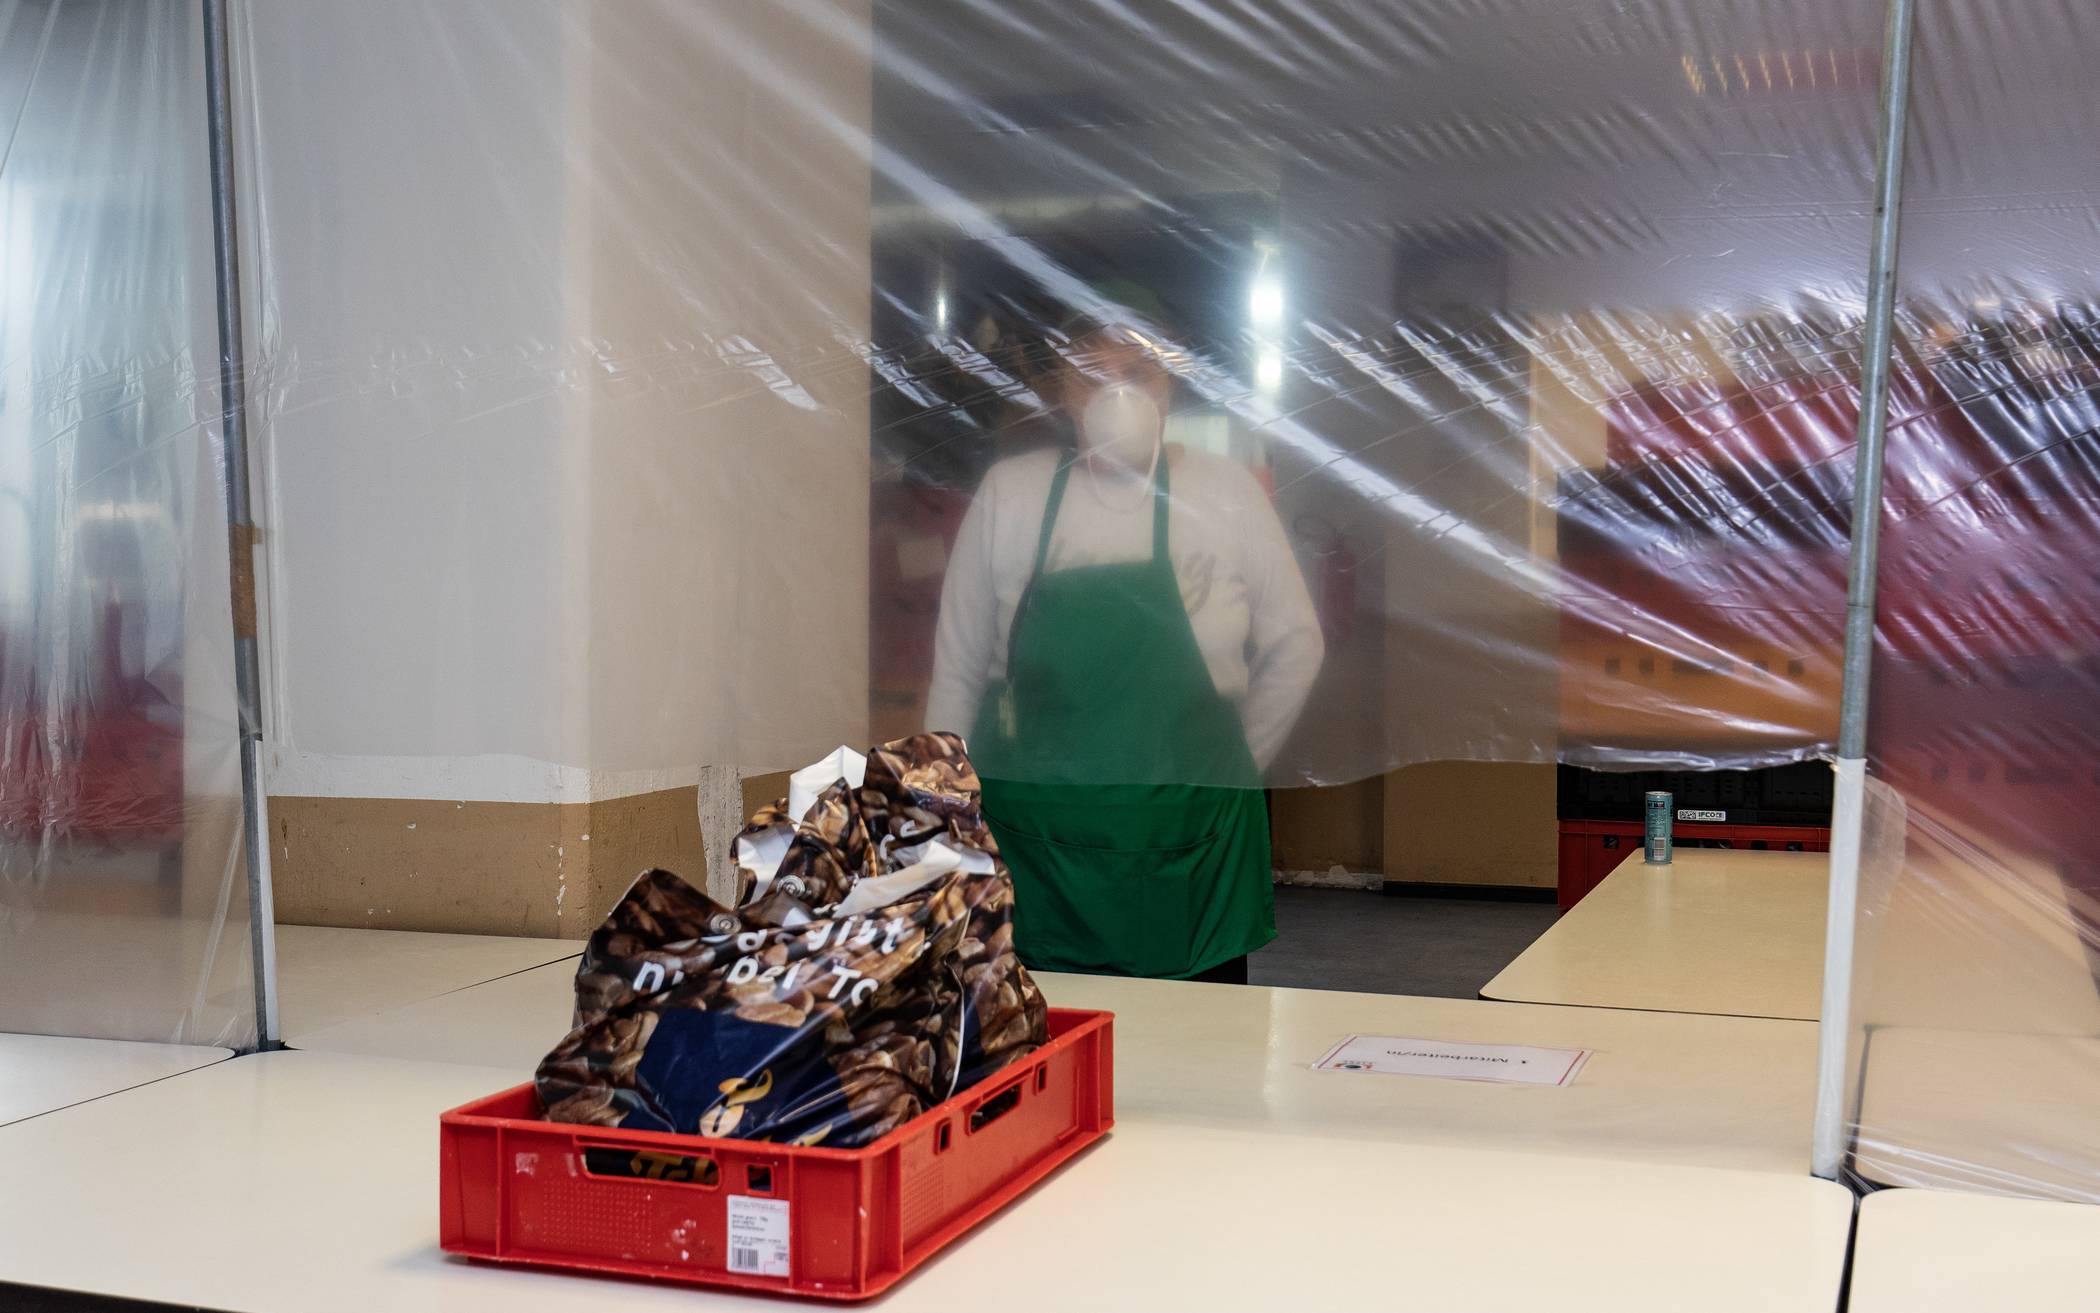 Die Wuppertaler Tafel gibt aktuel durch einen Schutz aus Folie Lebensmittelpakete an Bedürftige aus.